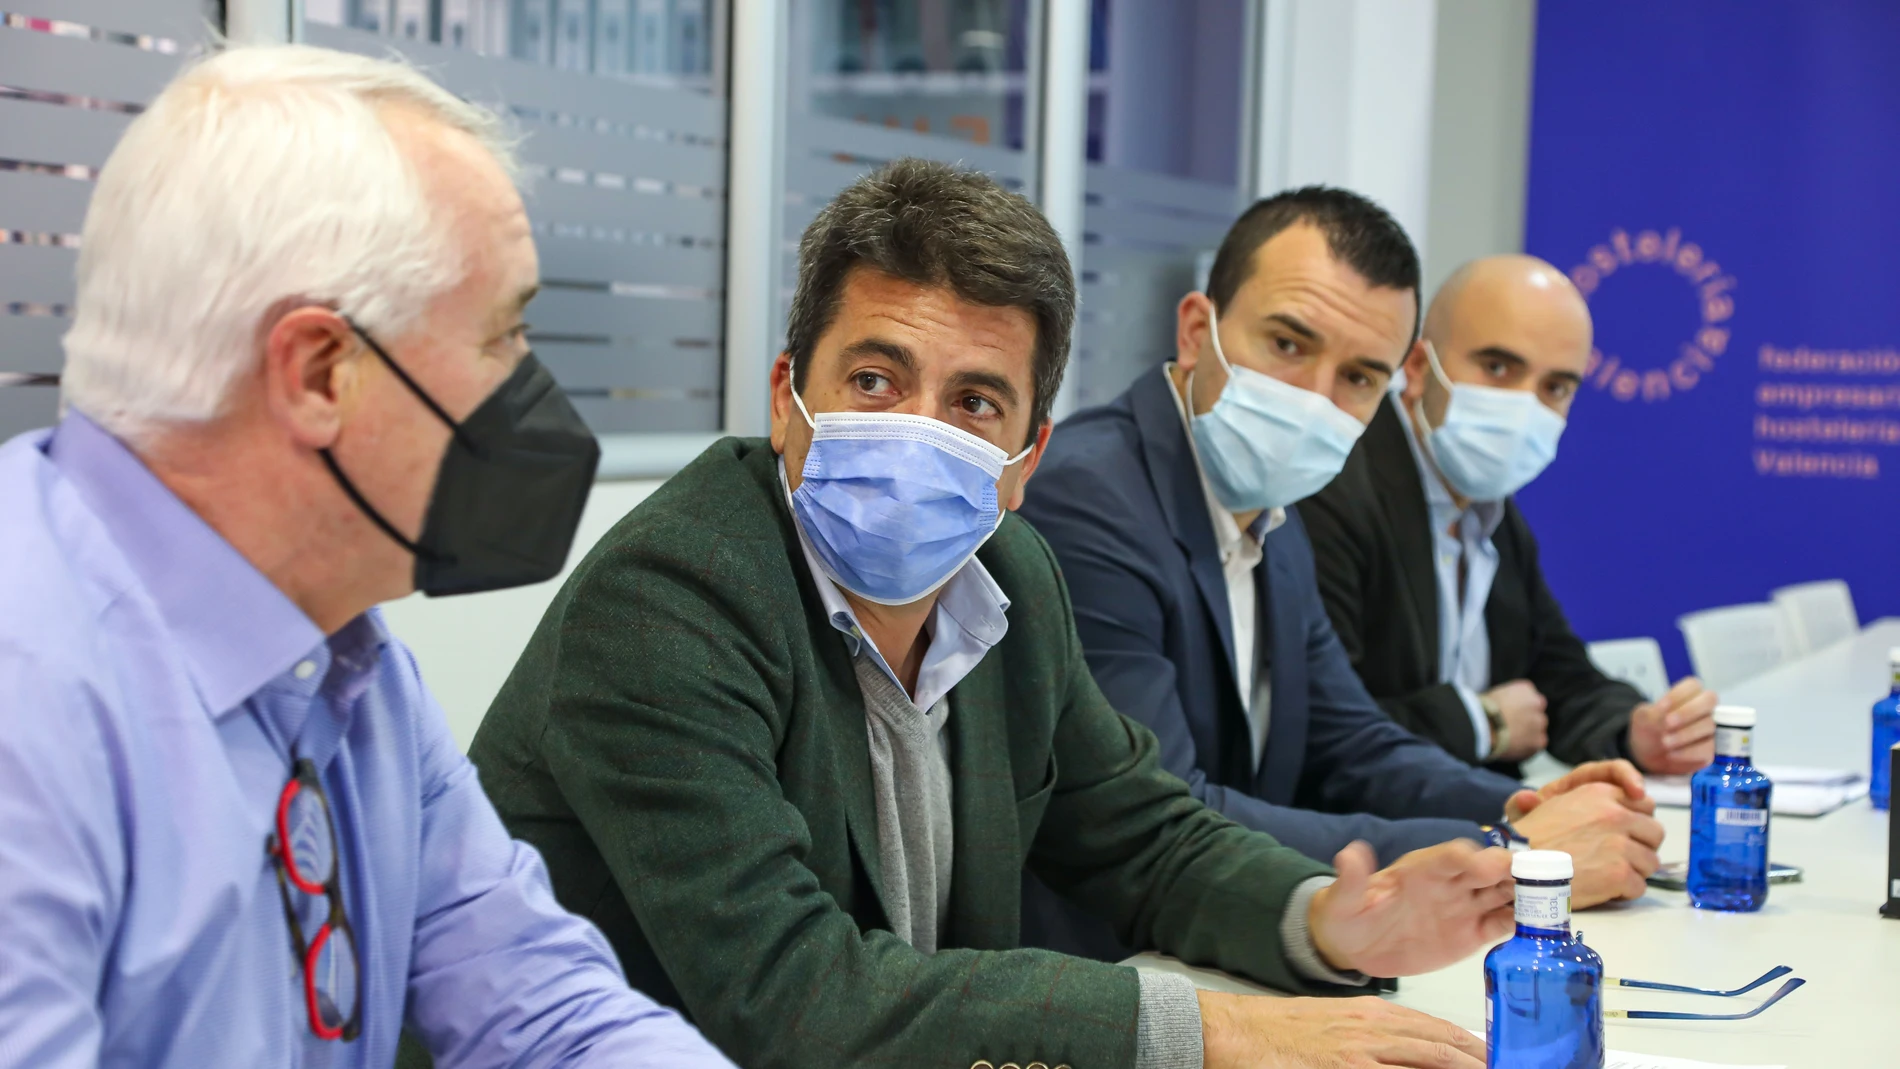 El presidente del PPCV, Carlos Mazón, se reúne con representantes de Conhostur y FEHV y exige a la Generalitat que elimine "ya" las restricciones y lance un "plan renove hostelería"